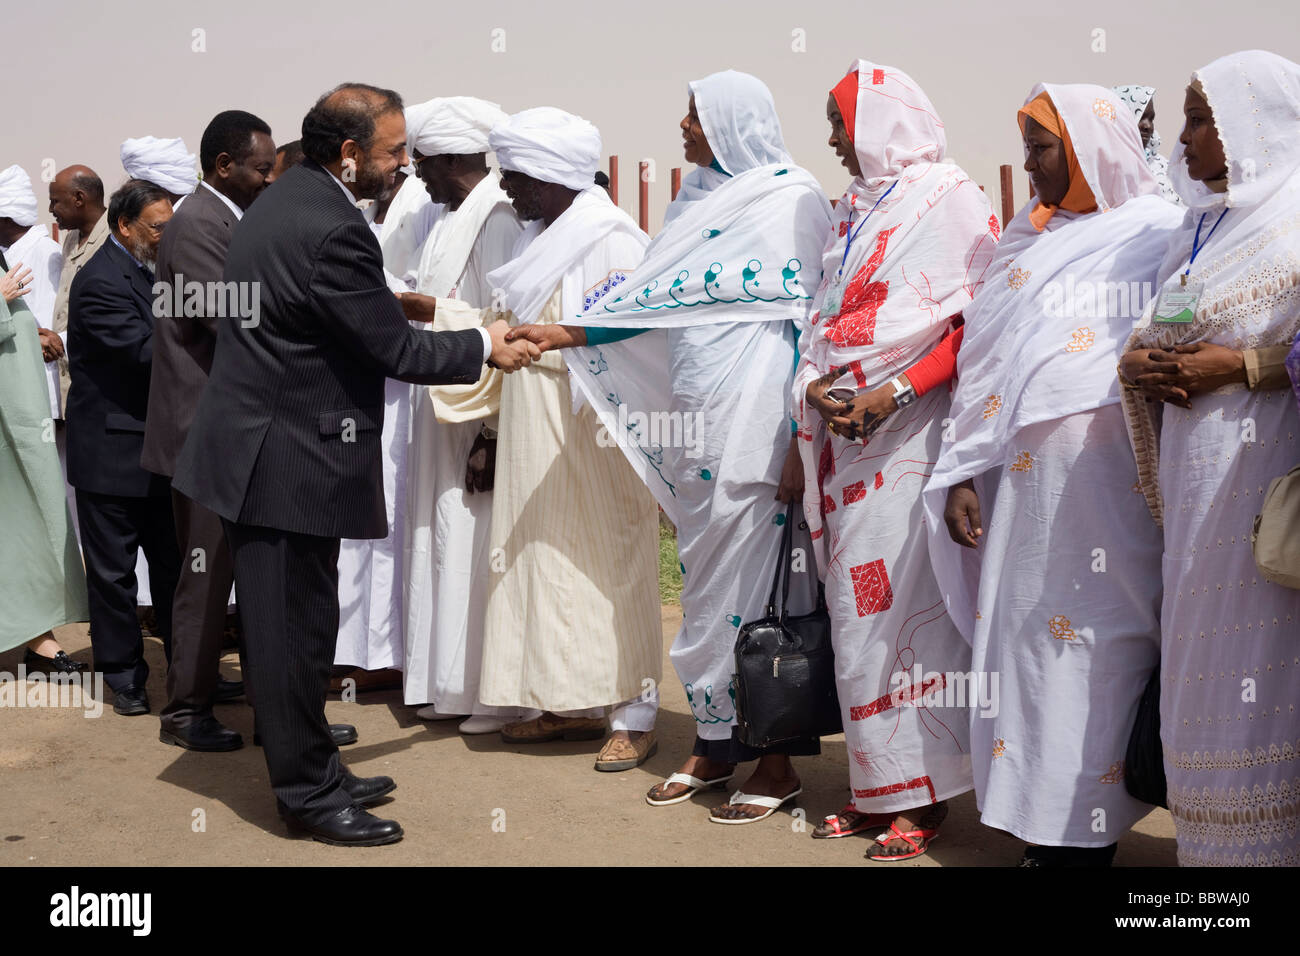 Par les pairs du travail britannique, Lord Ahmed, serre la main avec les femmes du Darfour sur le tarmac de l'aéroport Soudan Sullo. Banque D'Images